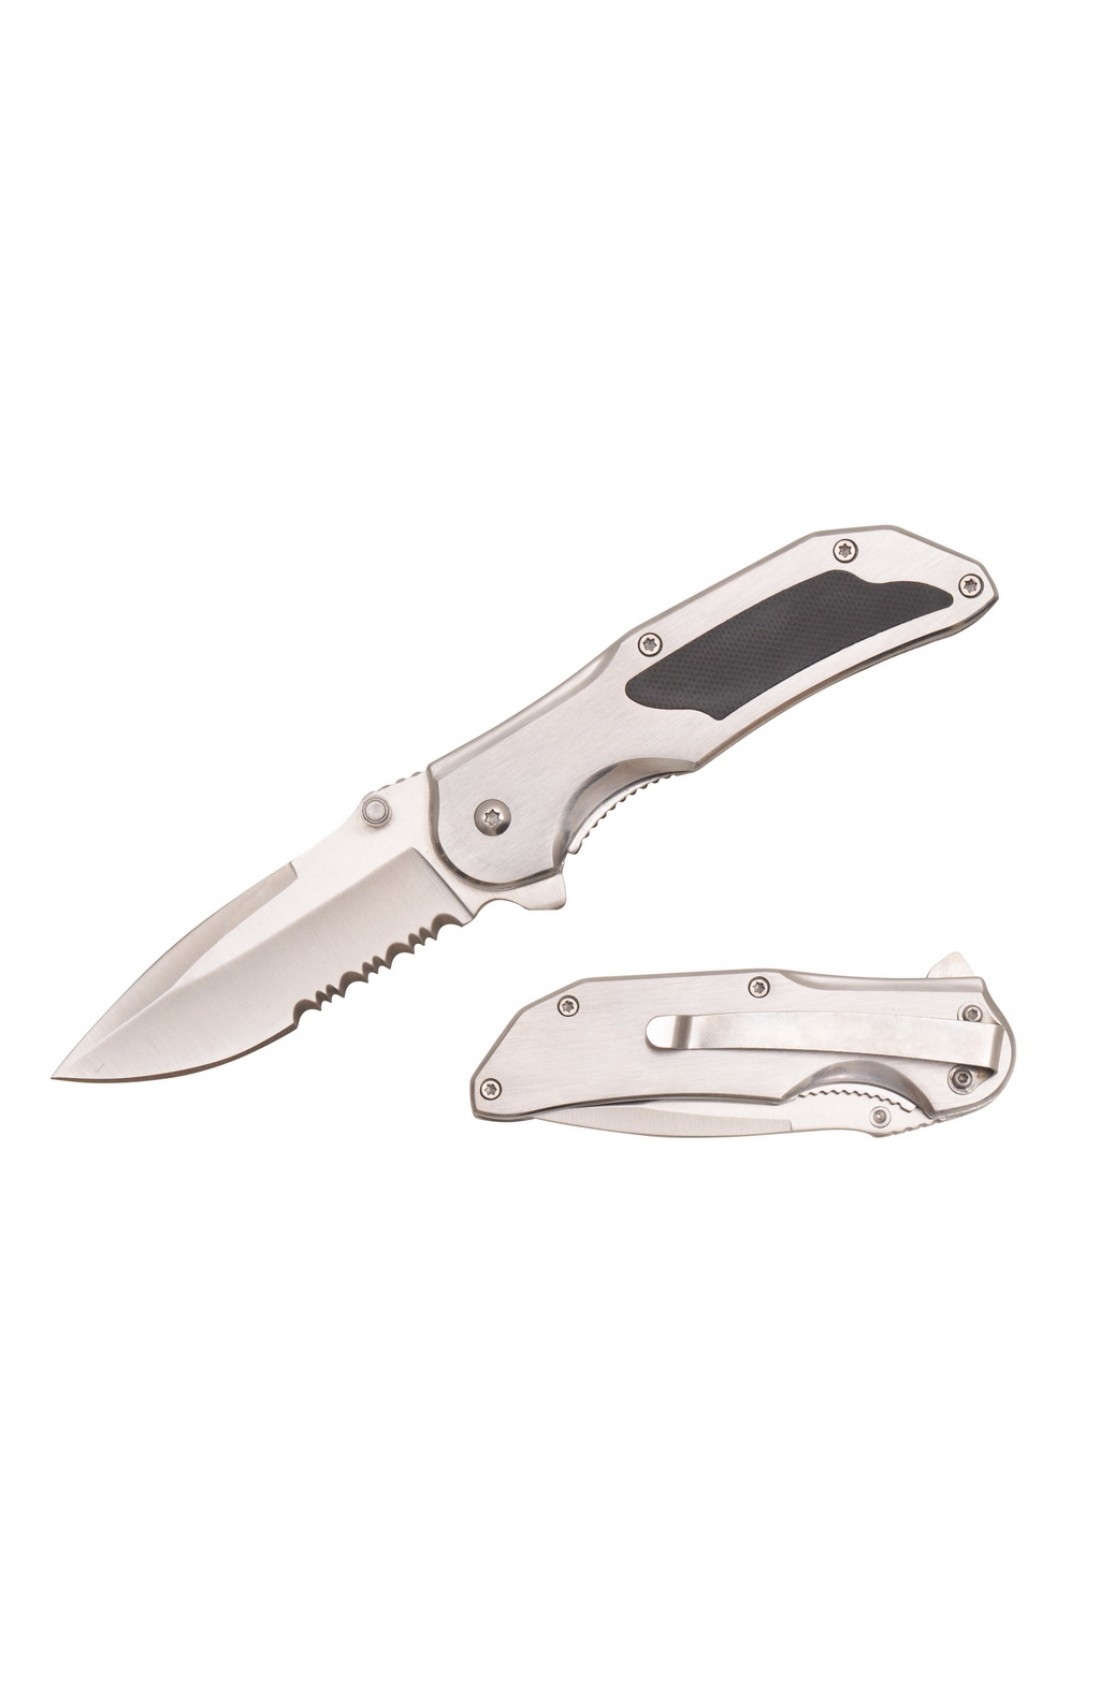 KNIFE T27098-2 Brush Stainless Steel KNIFE